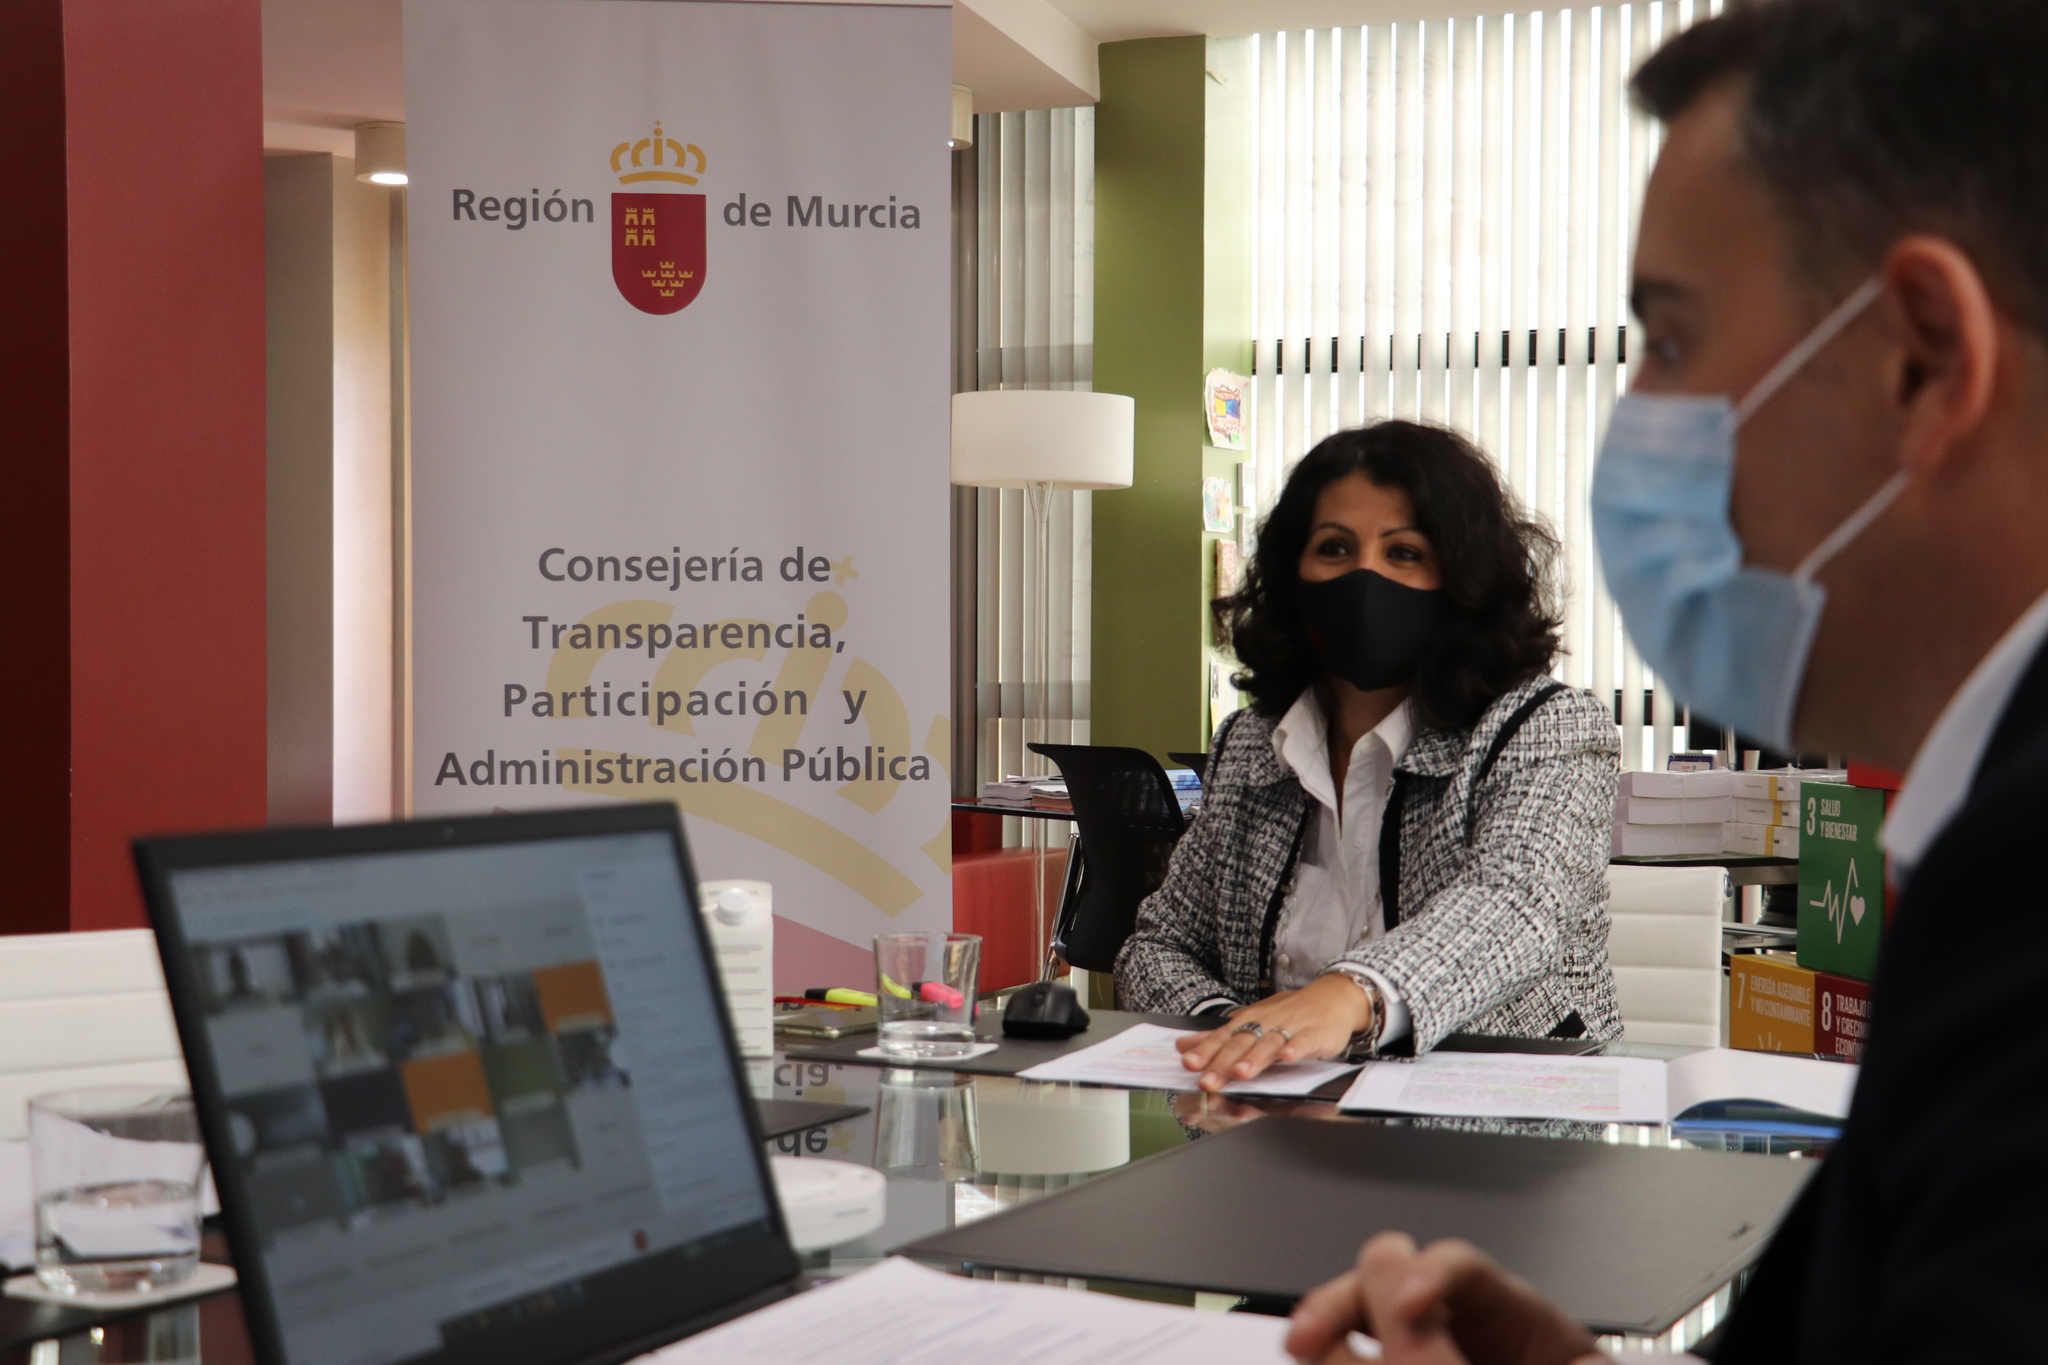 La consejera de Transparencia, Participación y Administración Pública, Beatriz Ballesteros, inaugura la jornada telemática sobre 'Integridad en la Contratación Pública de la Región de Murcia'